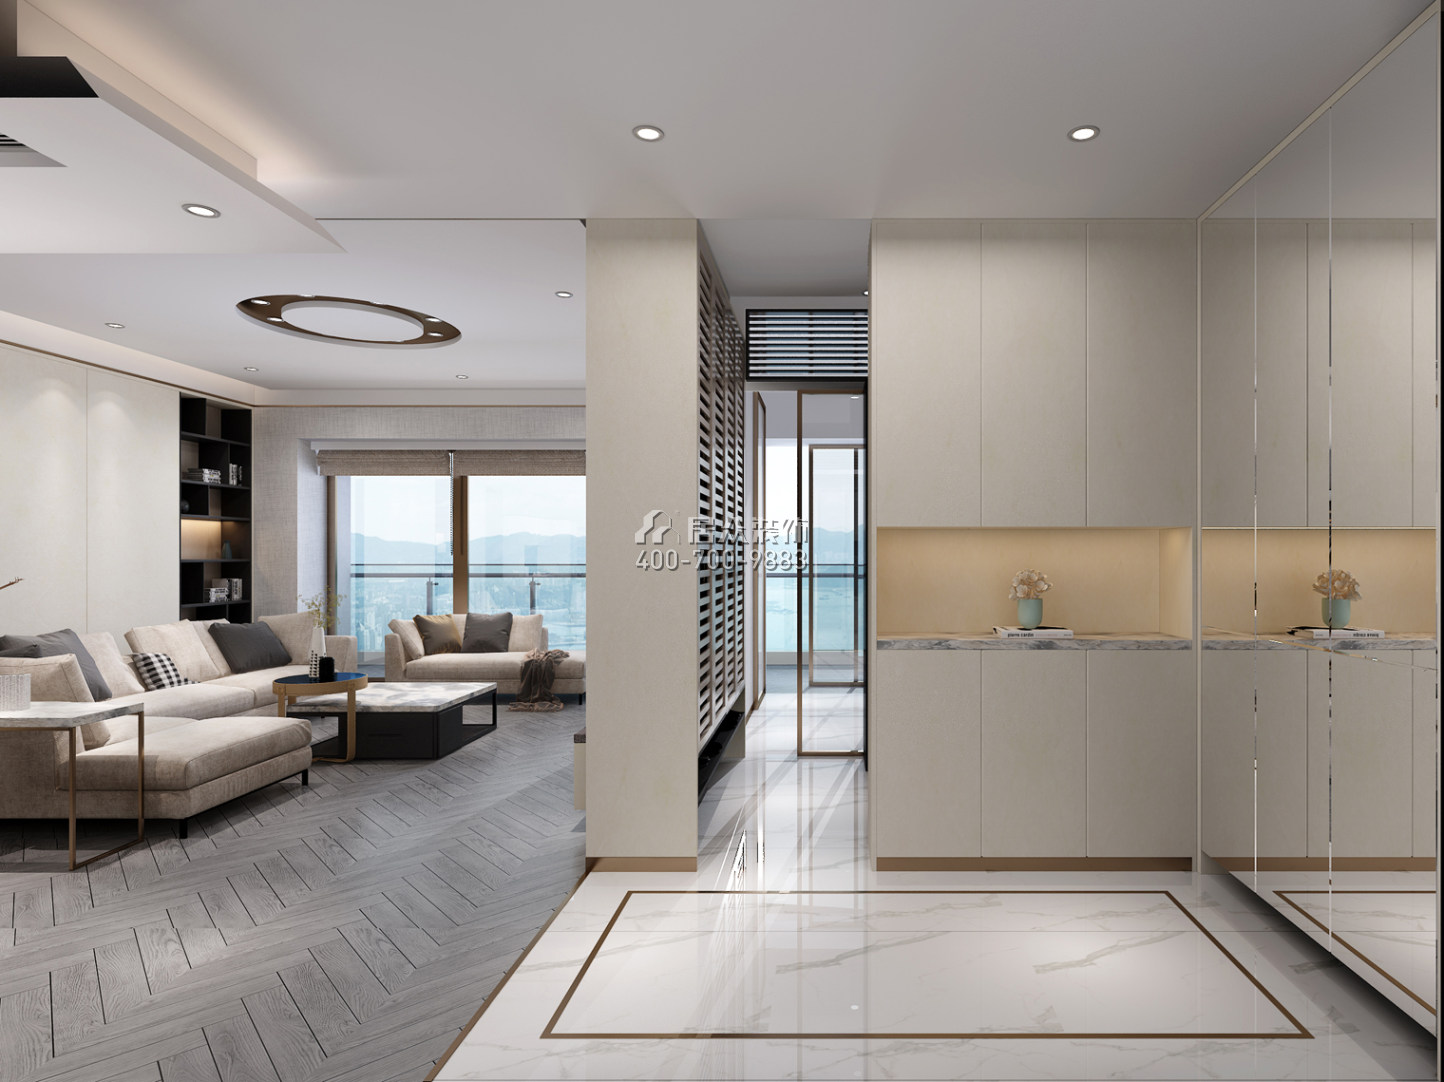 华润城润府二期206平方米现代简约风格平层户型客厅装修效果图